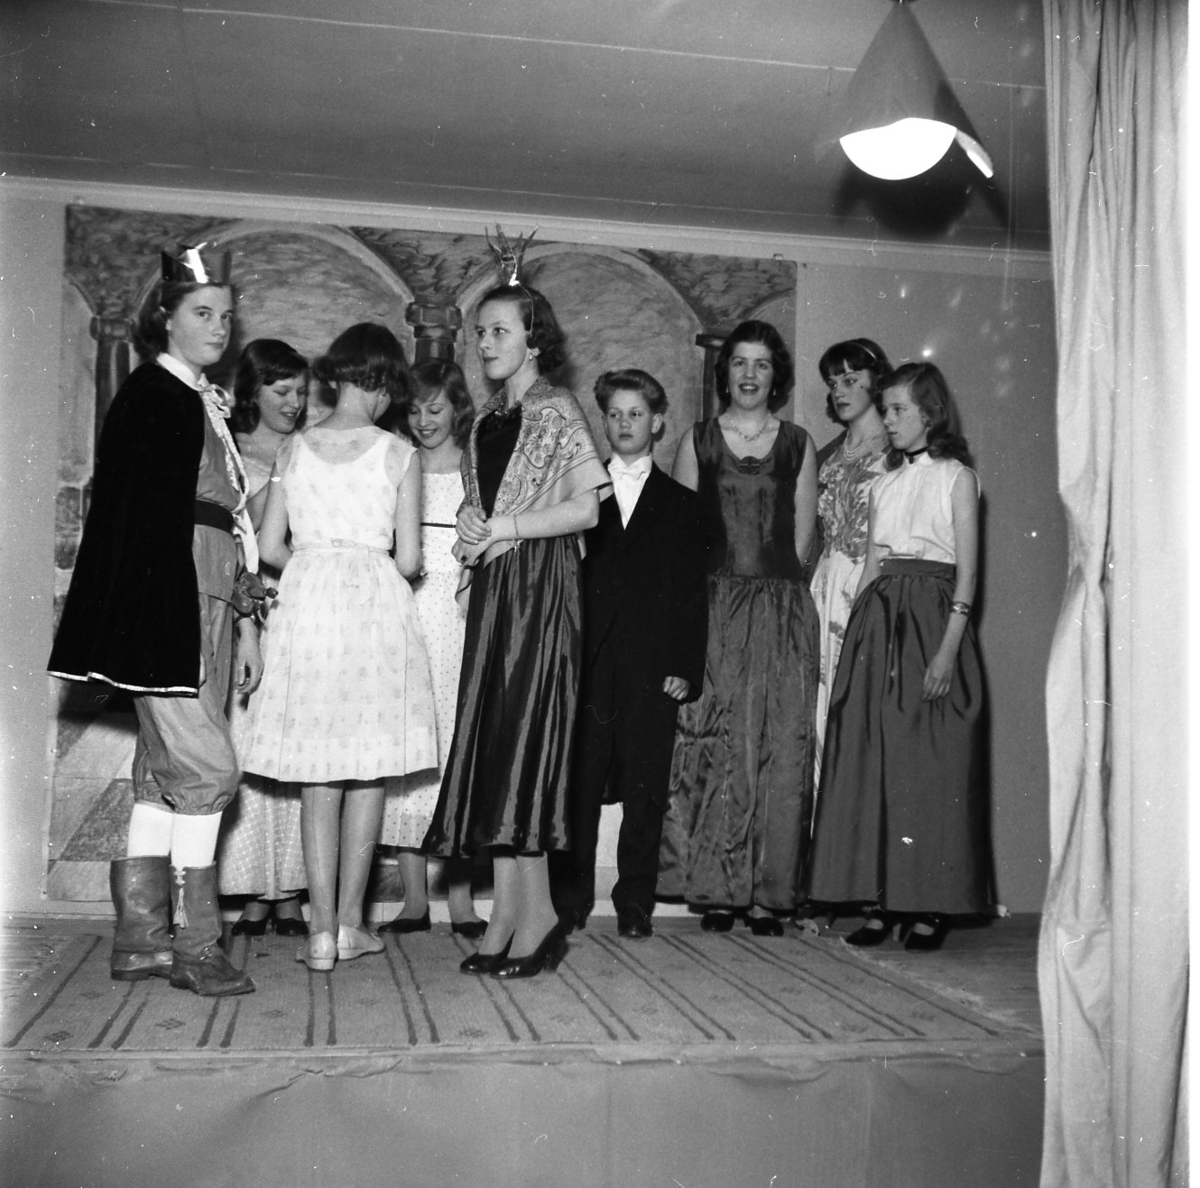 Flickor och pojkar står på en scen klädda för framförande av något skådespel. Från vänster Sylvia Berggren och Gerd Lago. Från höger Gunilla Dahlström, Kristina Ekström, Gudrun Fager, Kaj Johansson samt Ingrid Adolfsson.